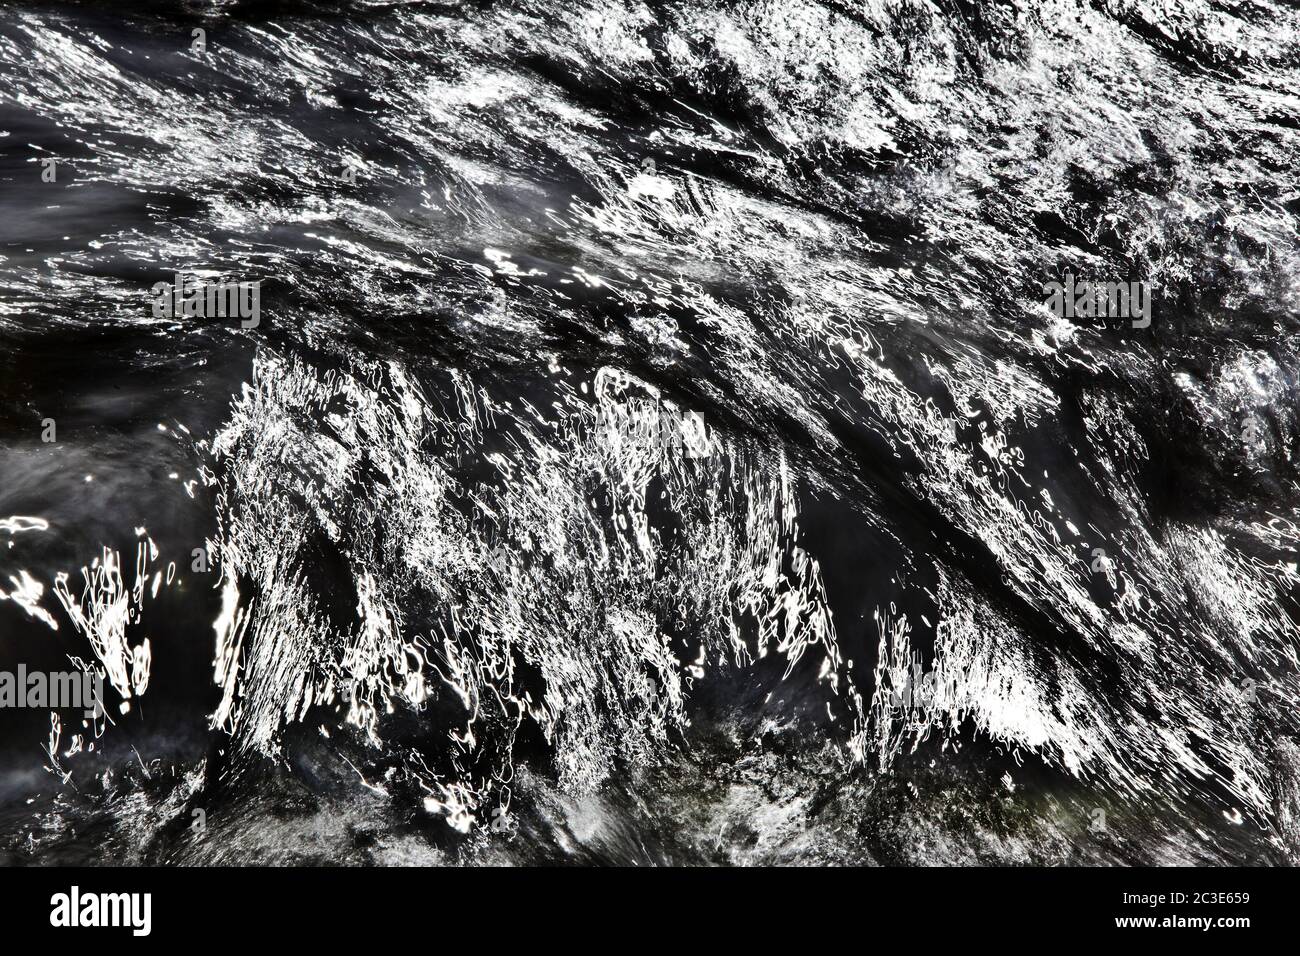 Vista detallada del agua que fluye, reflejos del sol que muestran la dirección del flujo de agua, Islandia, Europa Foto de stock